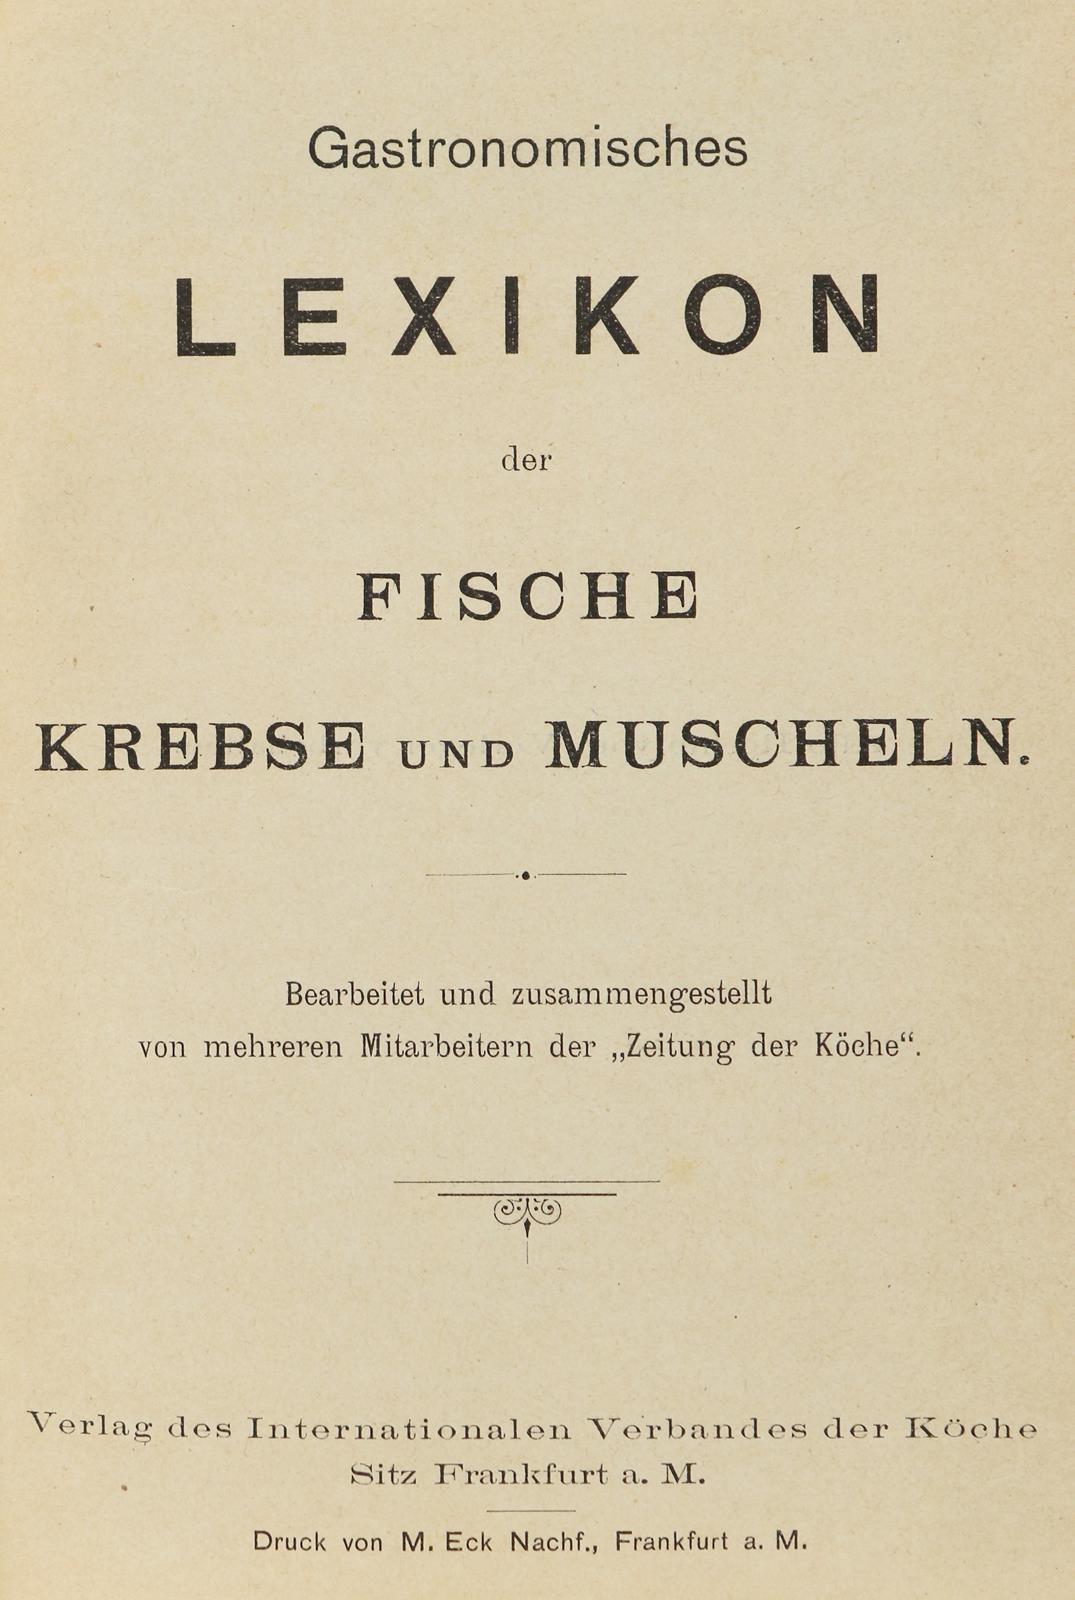 Gastronomisches Lexikon | Bild Nr.2